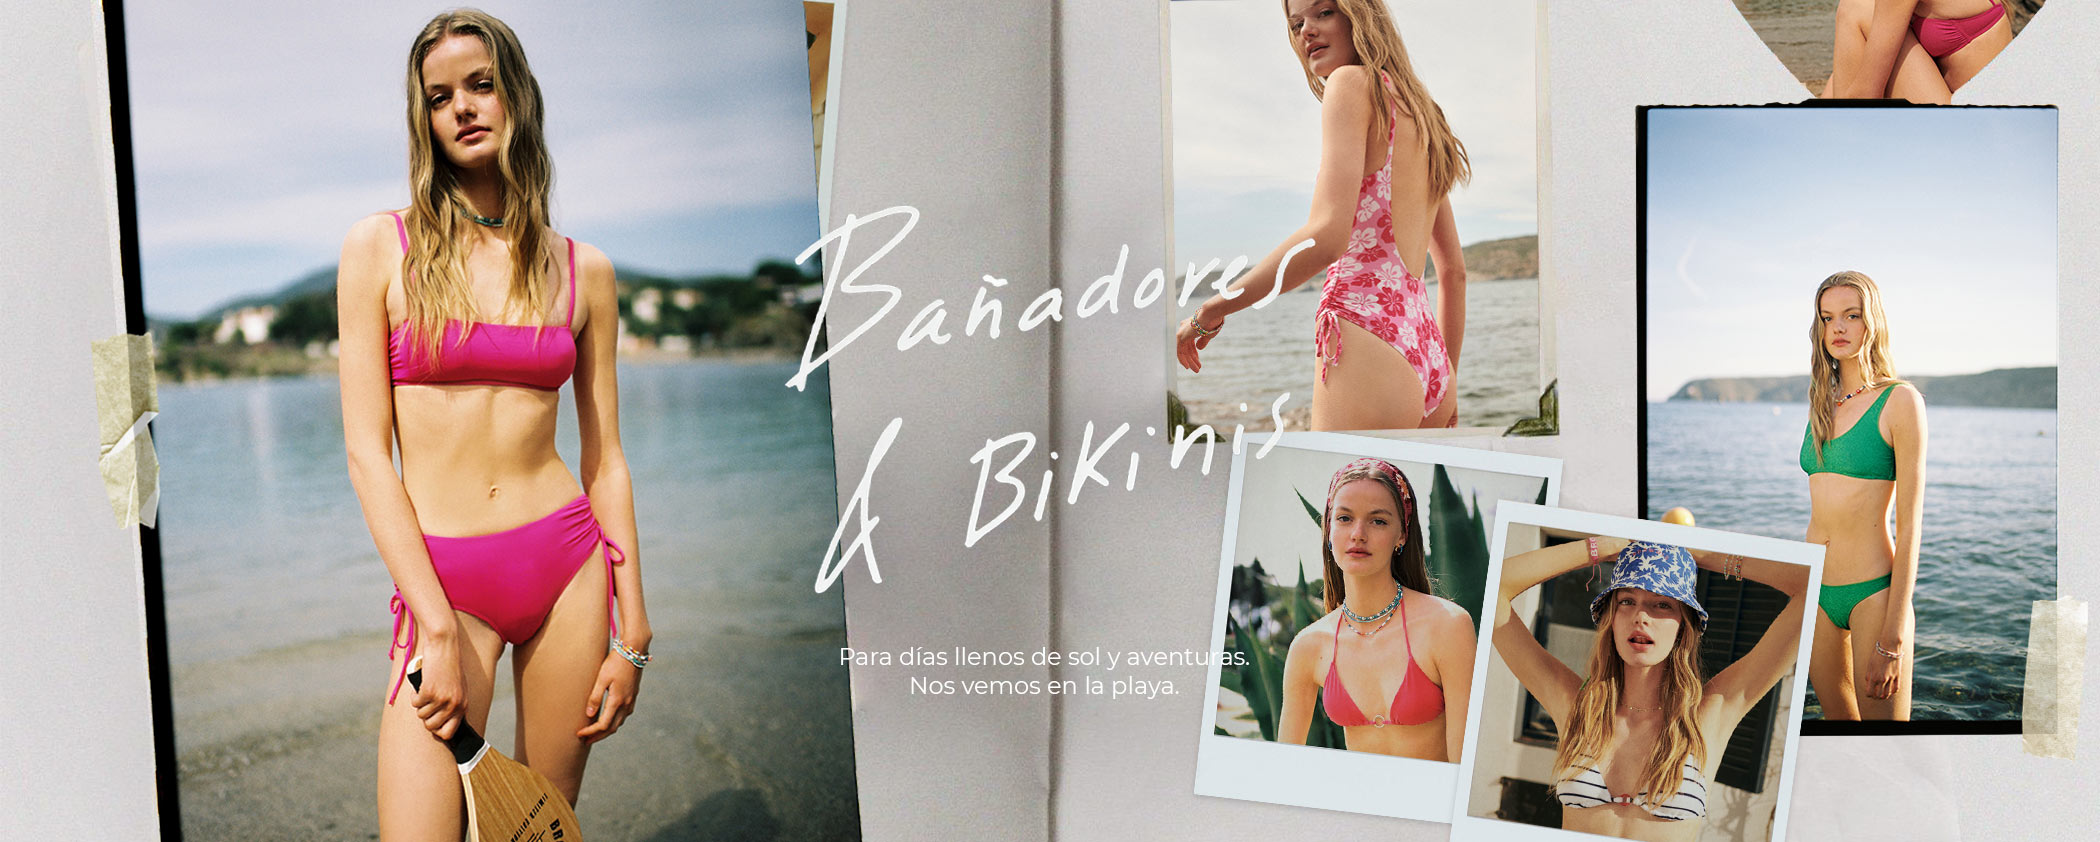 banadores-bikinis